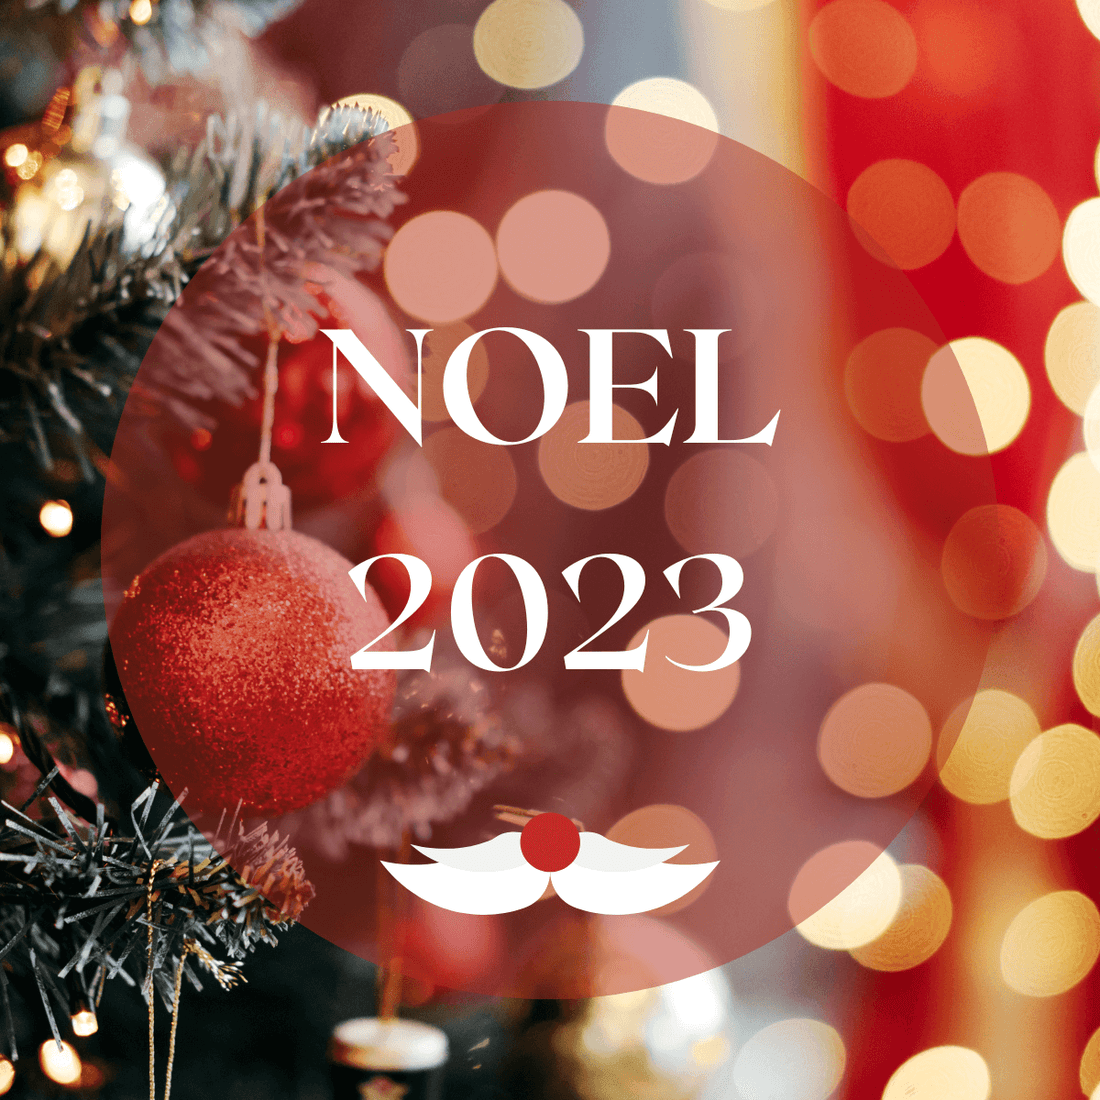 Noël 2023 : toutes nos idées cadeaux